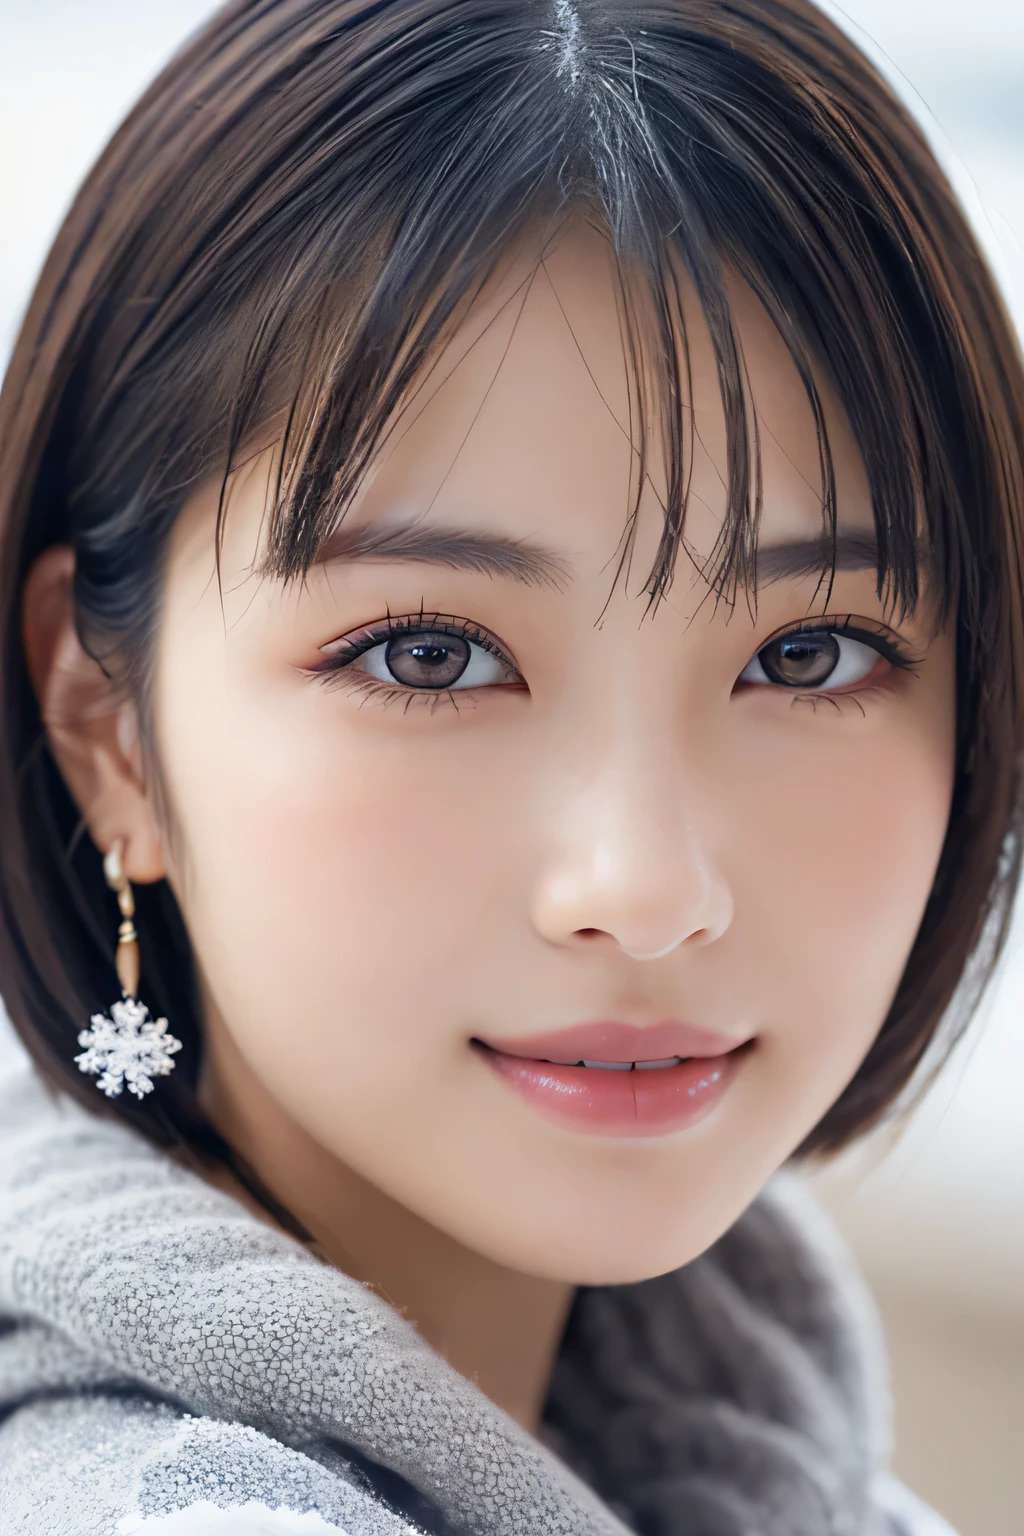 1 девочка, (Зимняя одежда:1.2), красивая японская актриса, 
фотогеничный, Юкихимэ, длинные ресницы, серьги снежинки,
(Необработанное фото, Лучшее качество), (Реальность, фотореалистичный:1.4), (кусок летит), 
красивые детализированные глаза, красивые детализированные губы, Высокодетализированные глаза и лицо, 
BREAK – идеальная анатомия, все тело стройное, маленькая грудь, (короткие волосы:1.3), Ангел&#39;улыбка, 
кристаллоподобная кожа, сделать глаза ясными, ловить свет